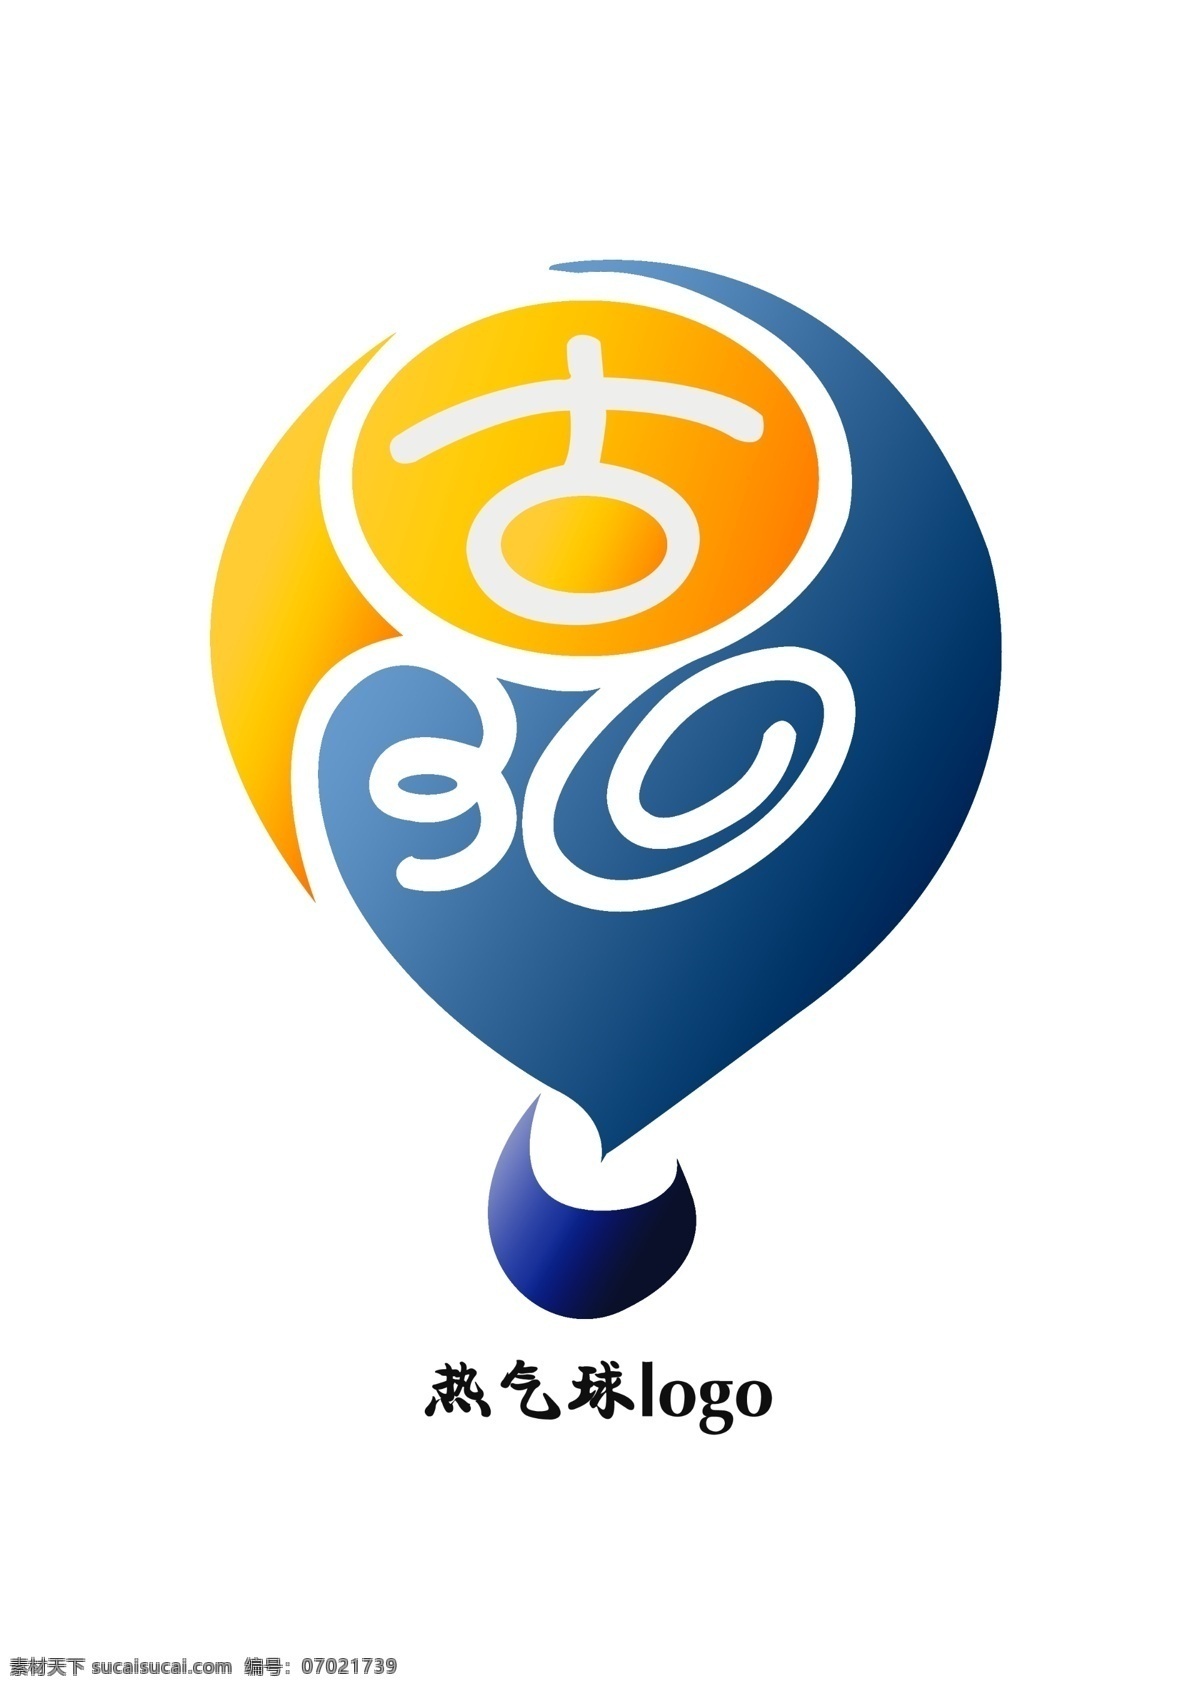 蒸汽 球 logo 气球的颜色 色彩明度 角度的对比 原创设计 其他原创设计